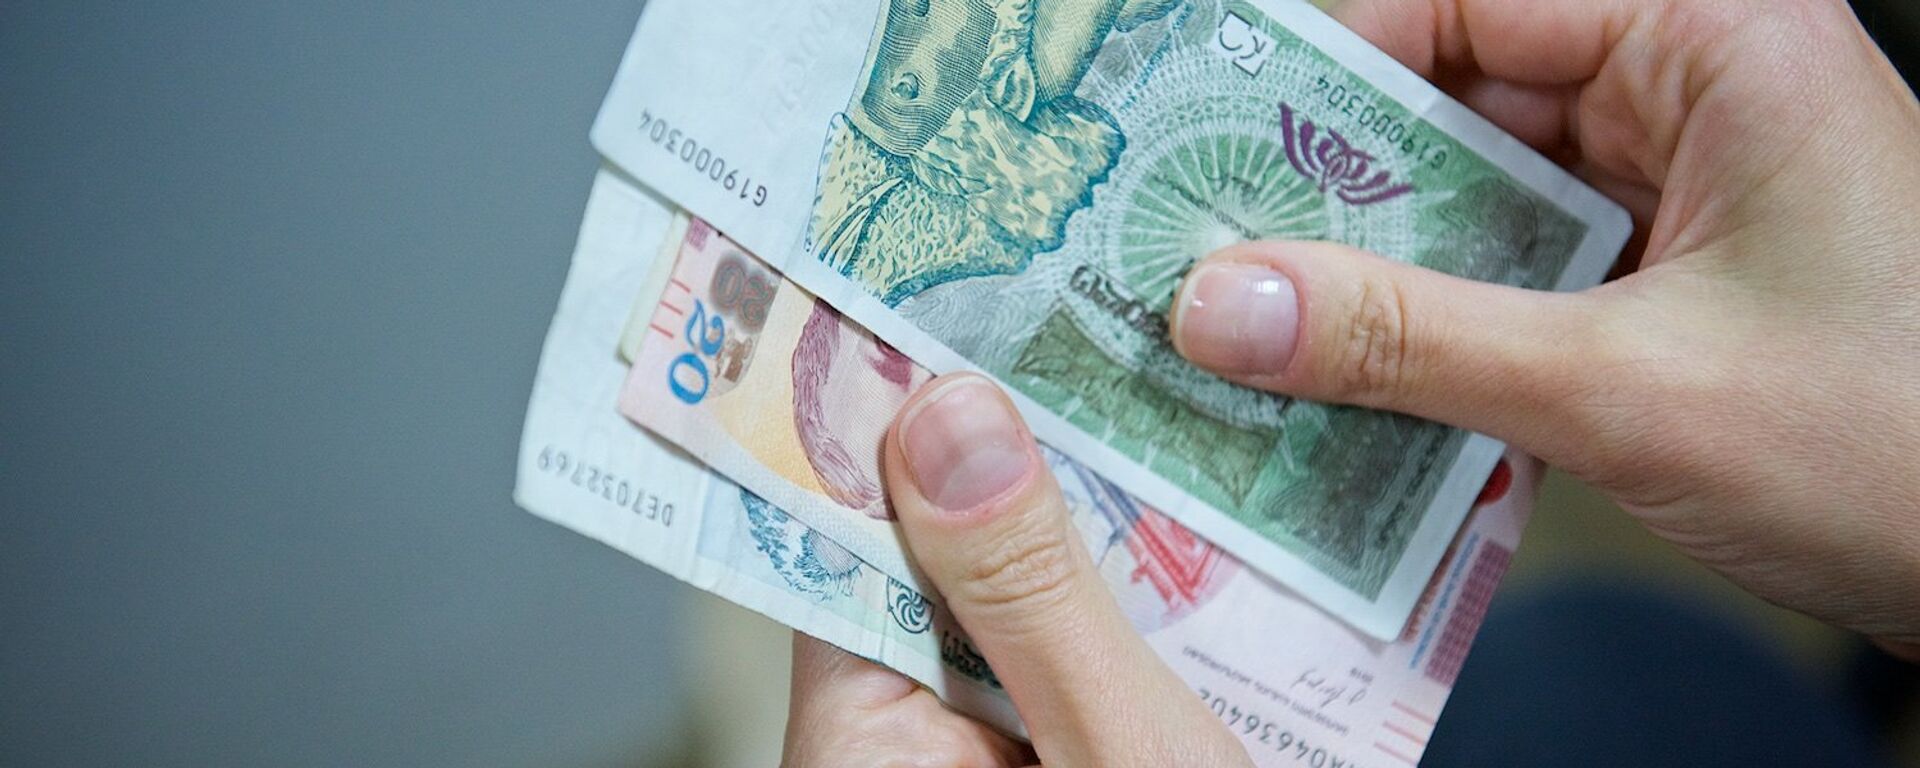 Человек держит в руках купюры грузинской валюты лари различного номинала - Sputnik Грузия, 1920, 09.12.2021